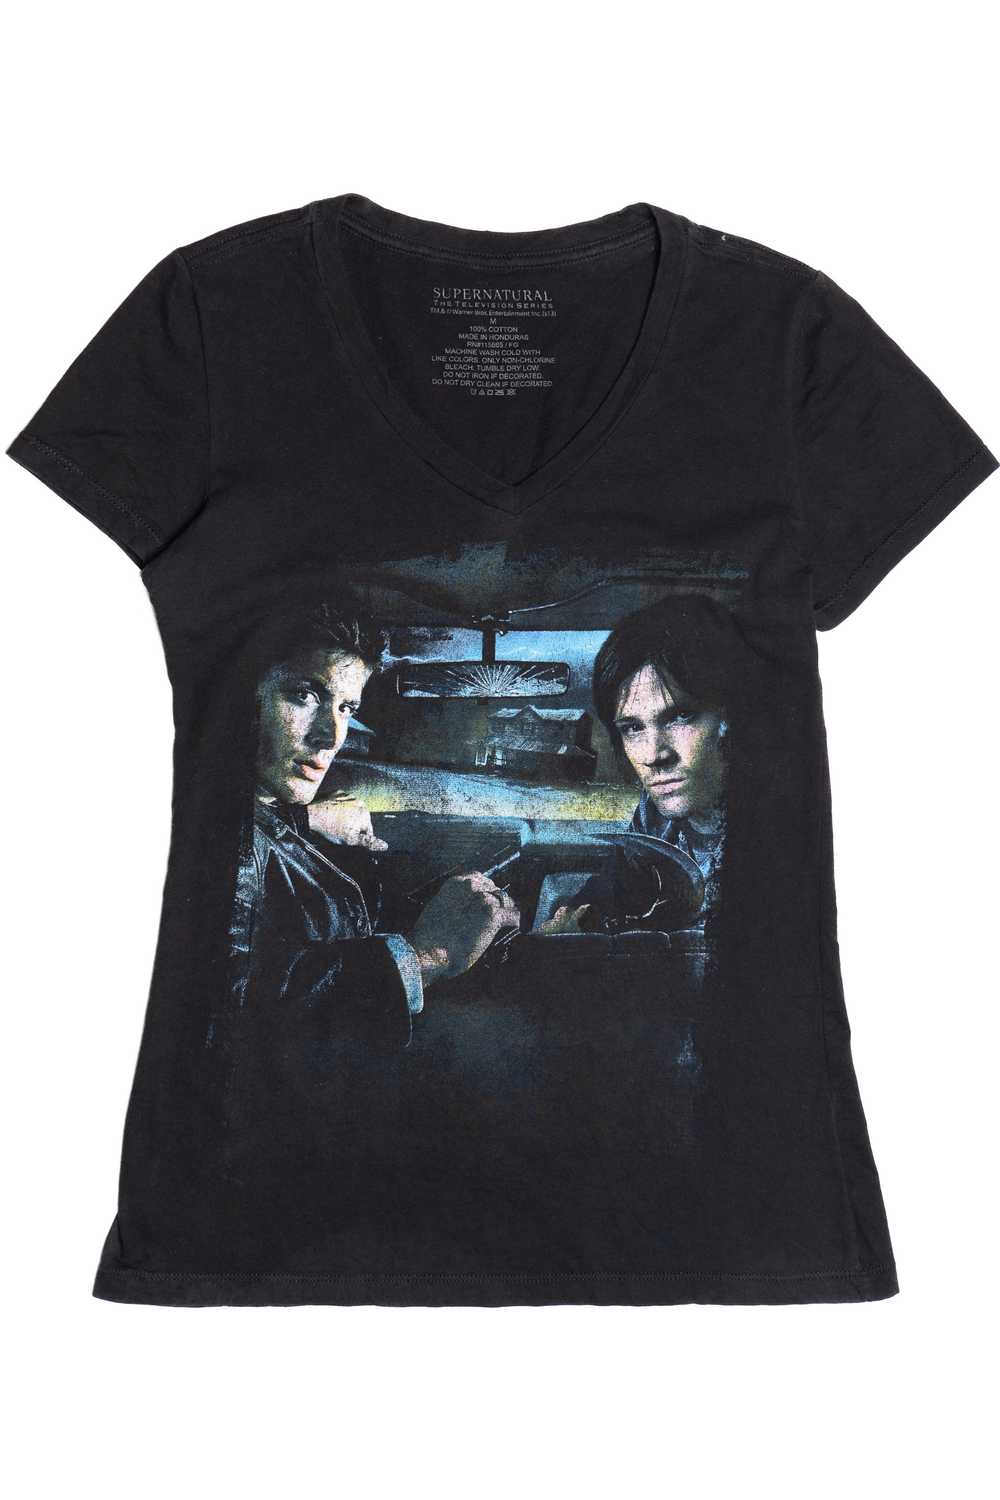 Sam & Dean Supernatural V-Neck T-Shirt 10699 - image 1